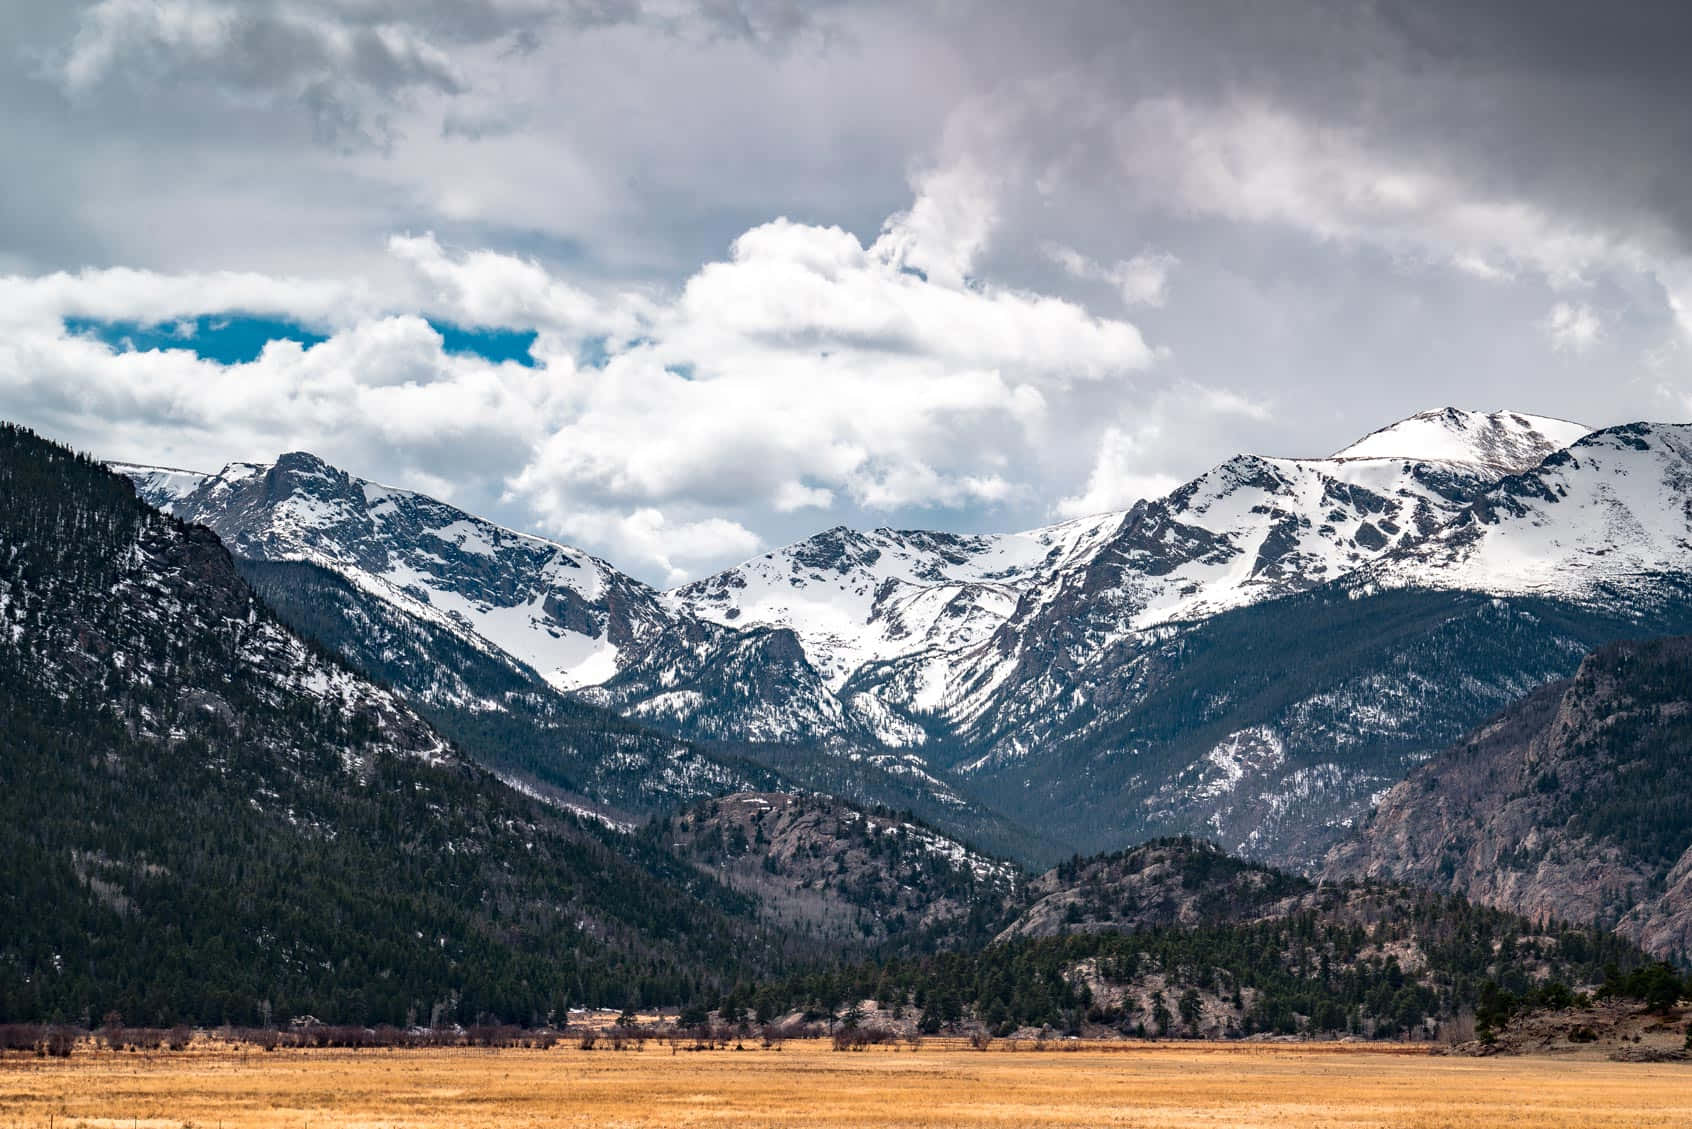 Capturandola Belleza De Las Montañas De Colorado.